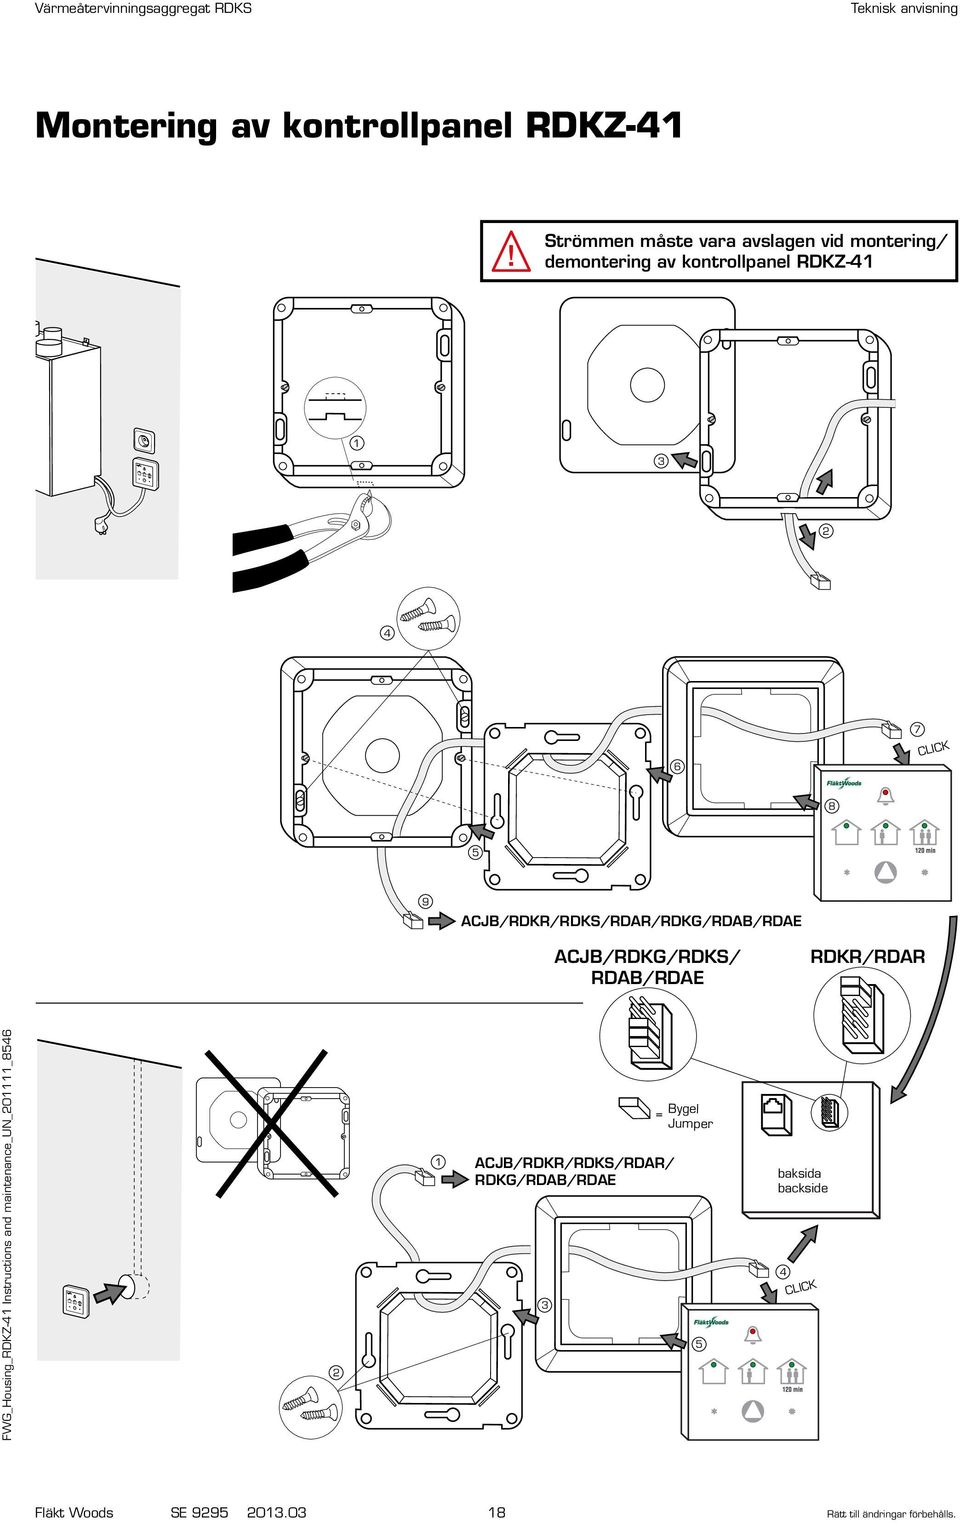 Värmeåtervinningsaggregat RDKS. Teknisk anvisning för montering, drift och  skötsel - PDF Free Download